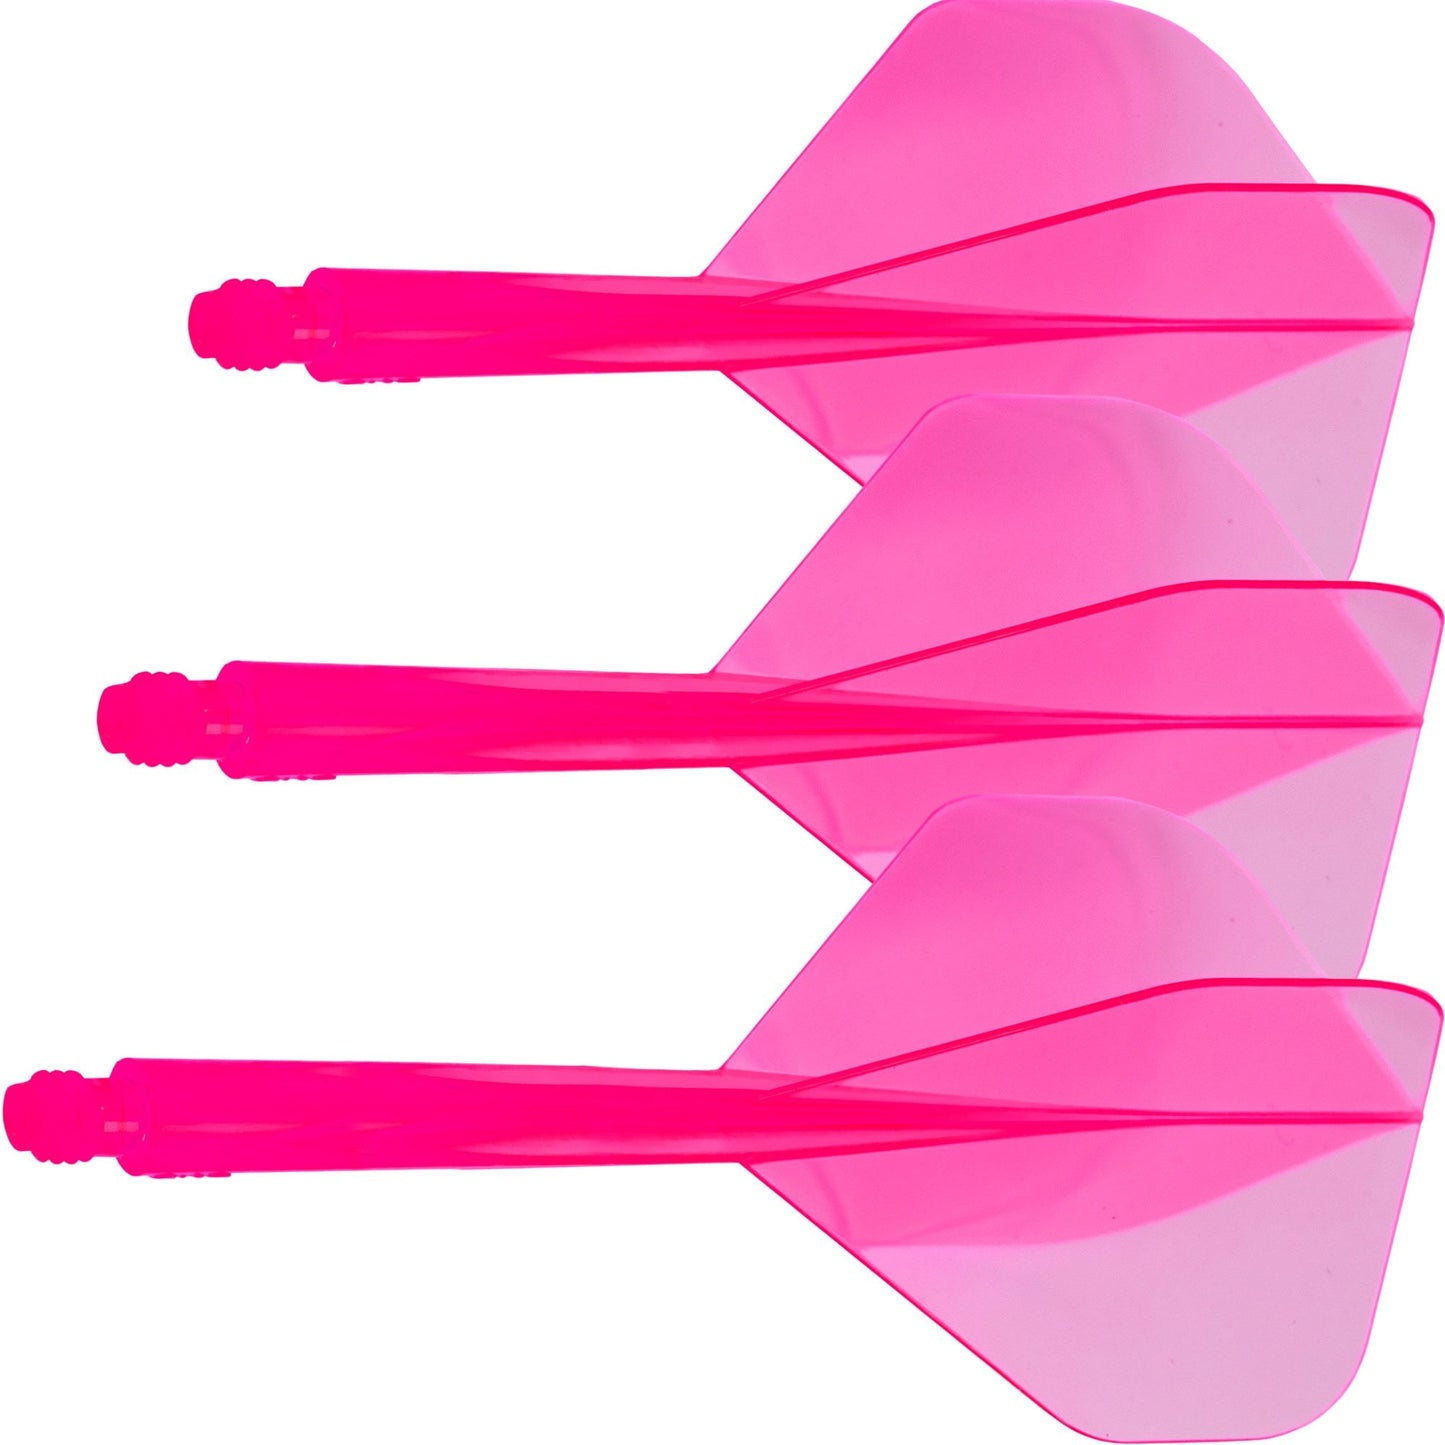 Trinidad darts condor axe standard neon pink m 27. 5 mm 3 units